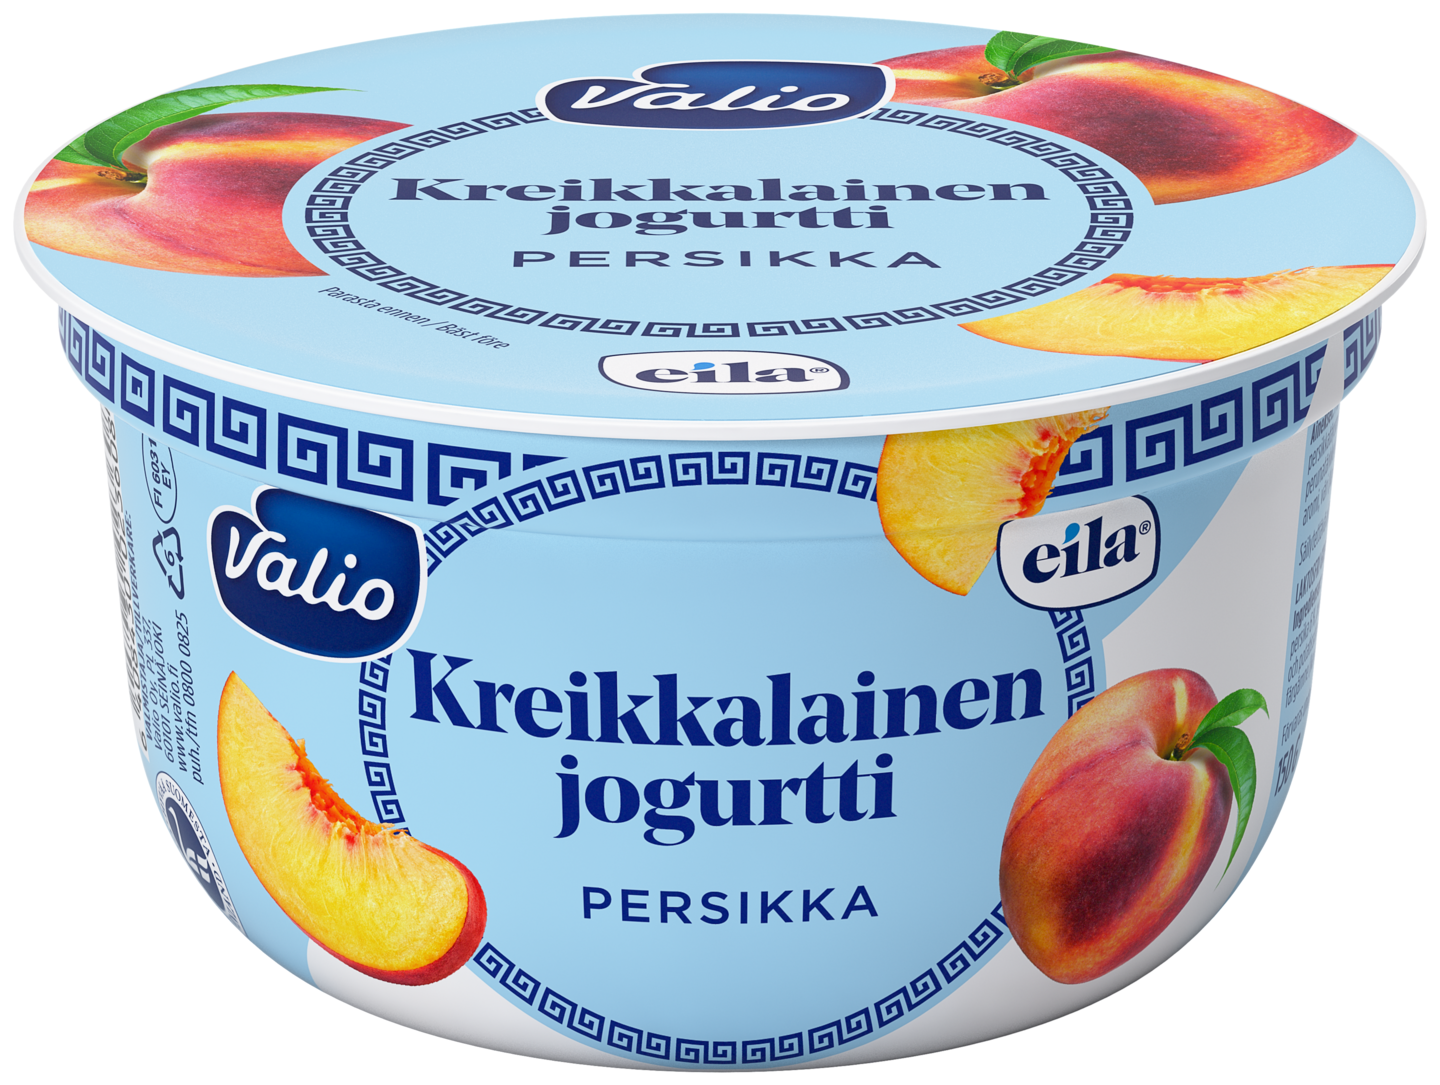 Valio kreikkalainen jogurtti 150 g persikka laktoositon